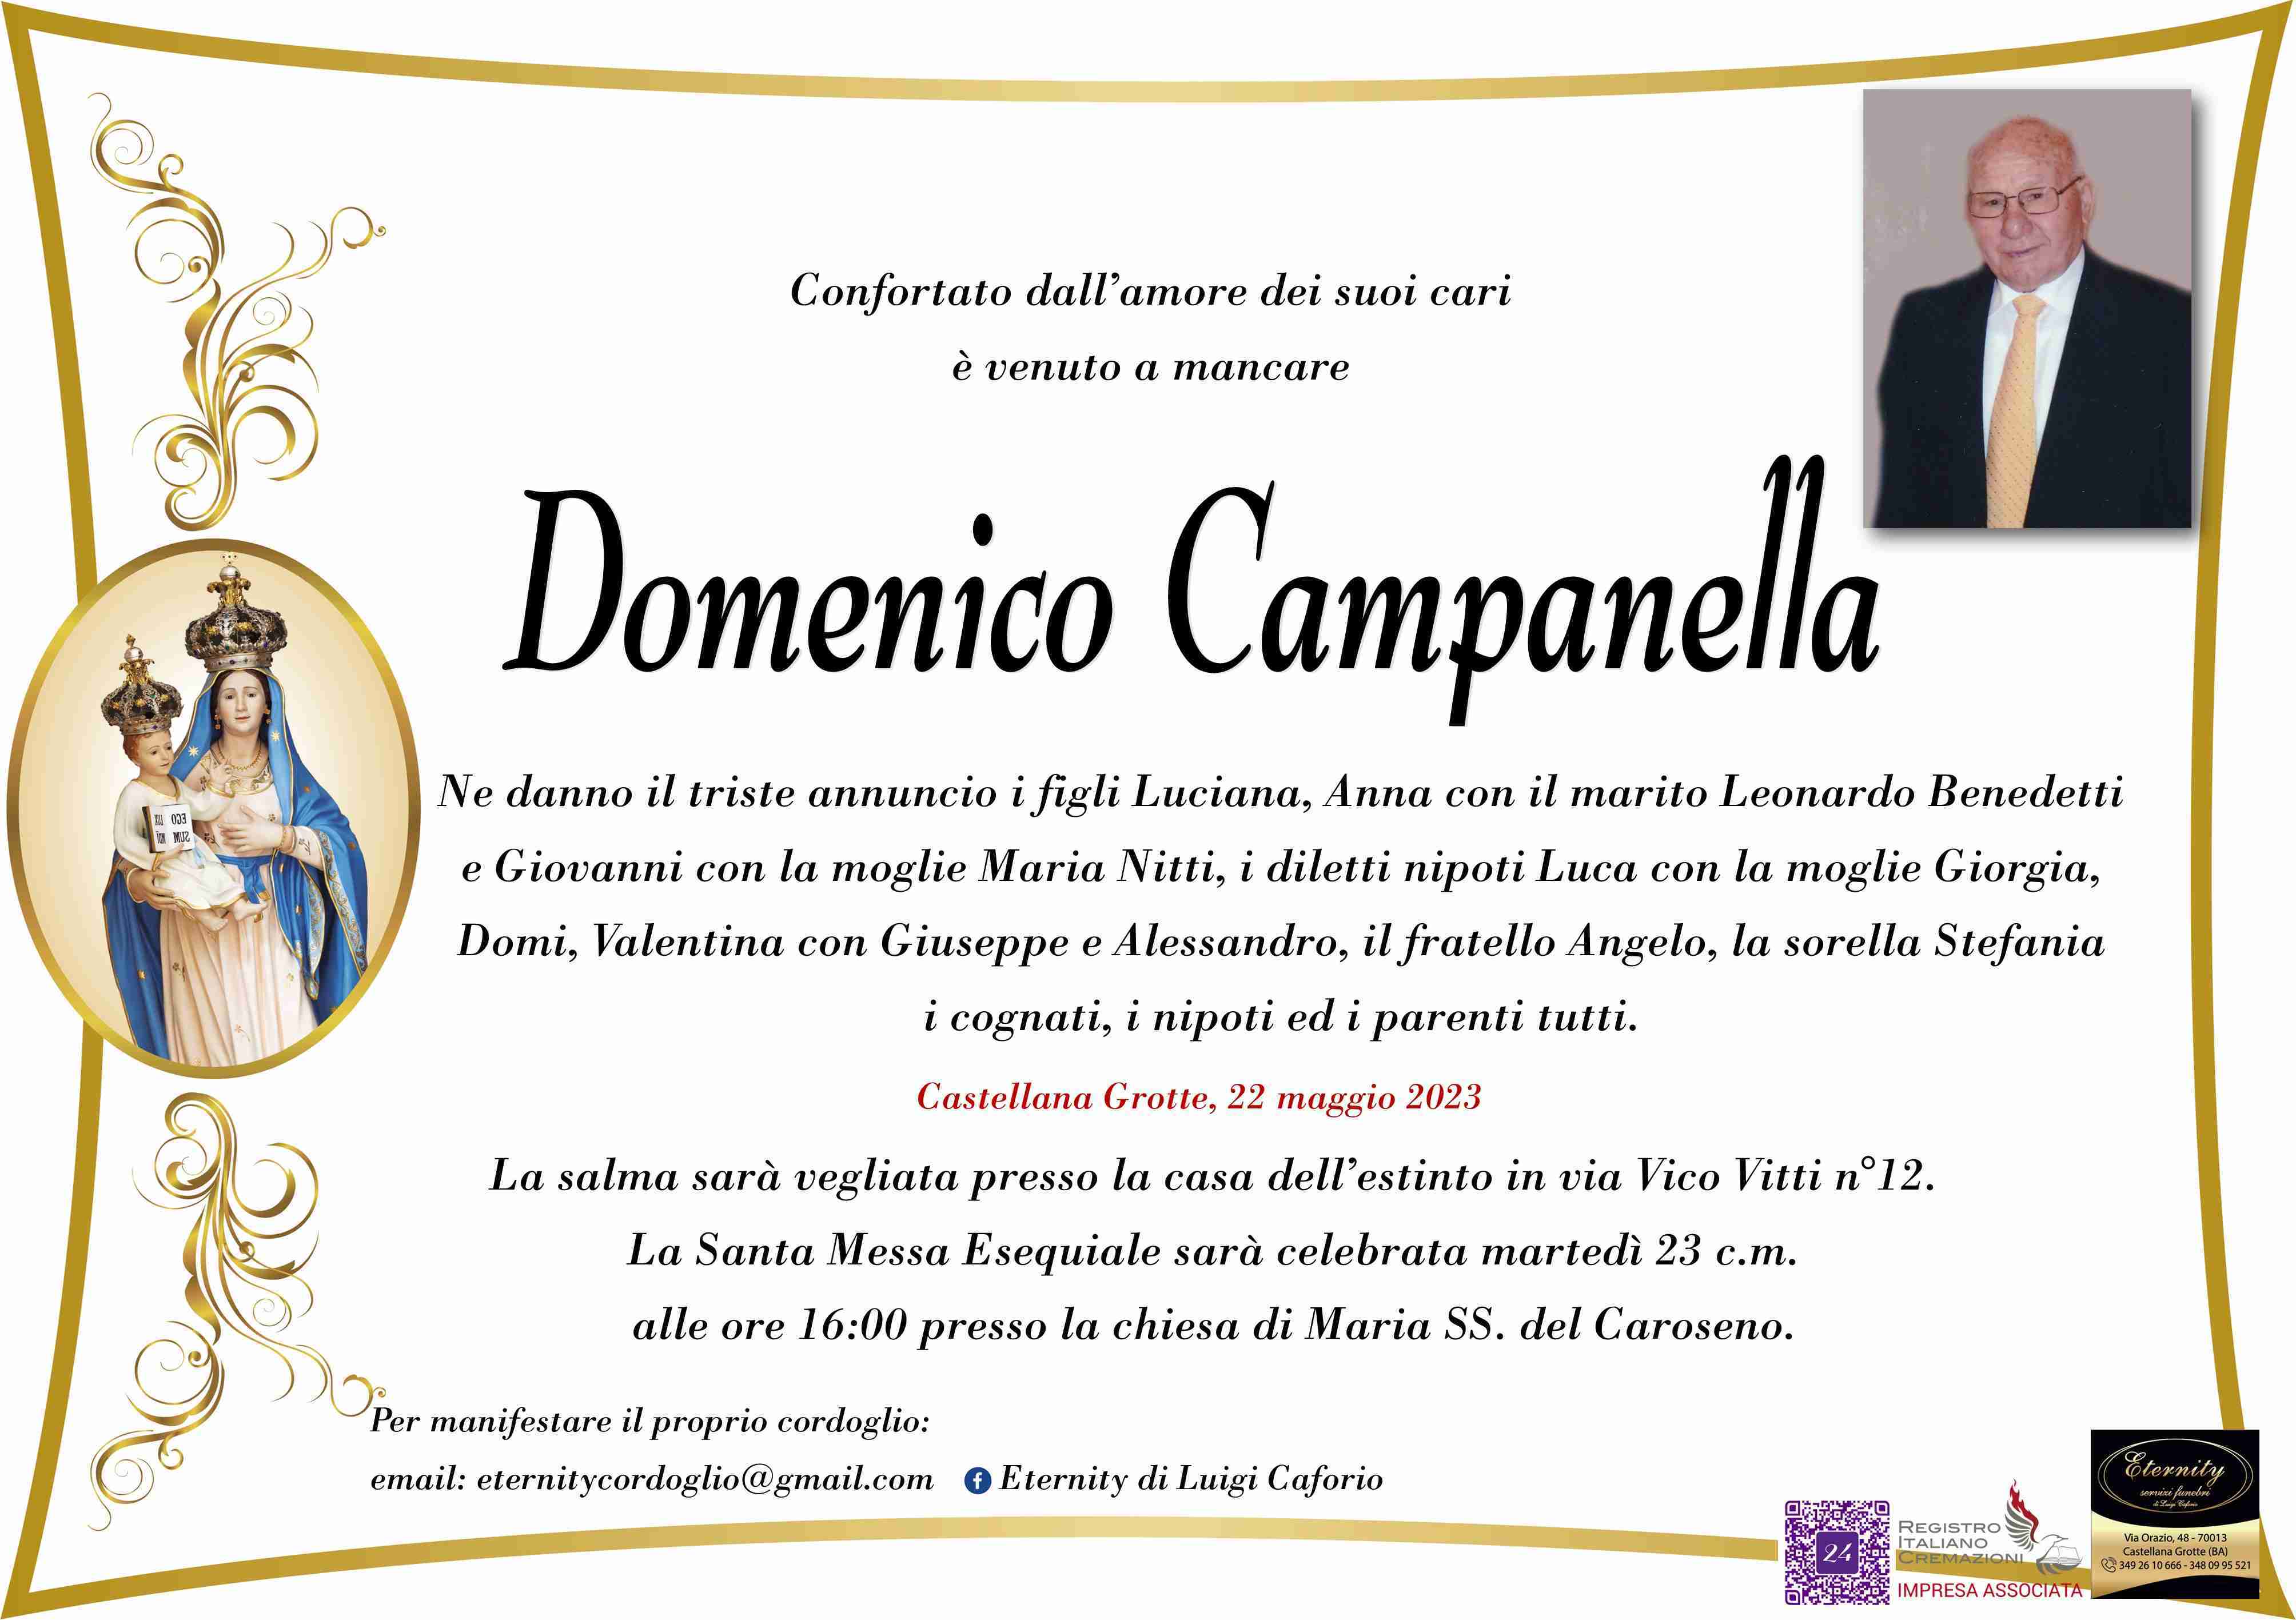 Domenico Campanella